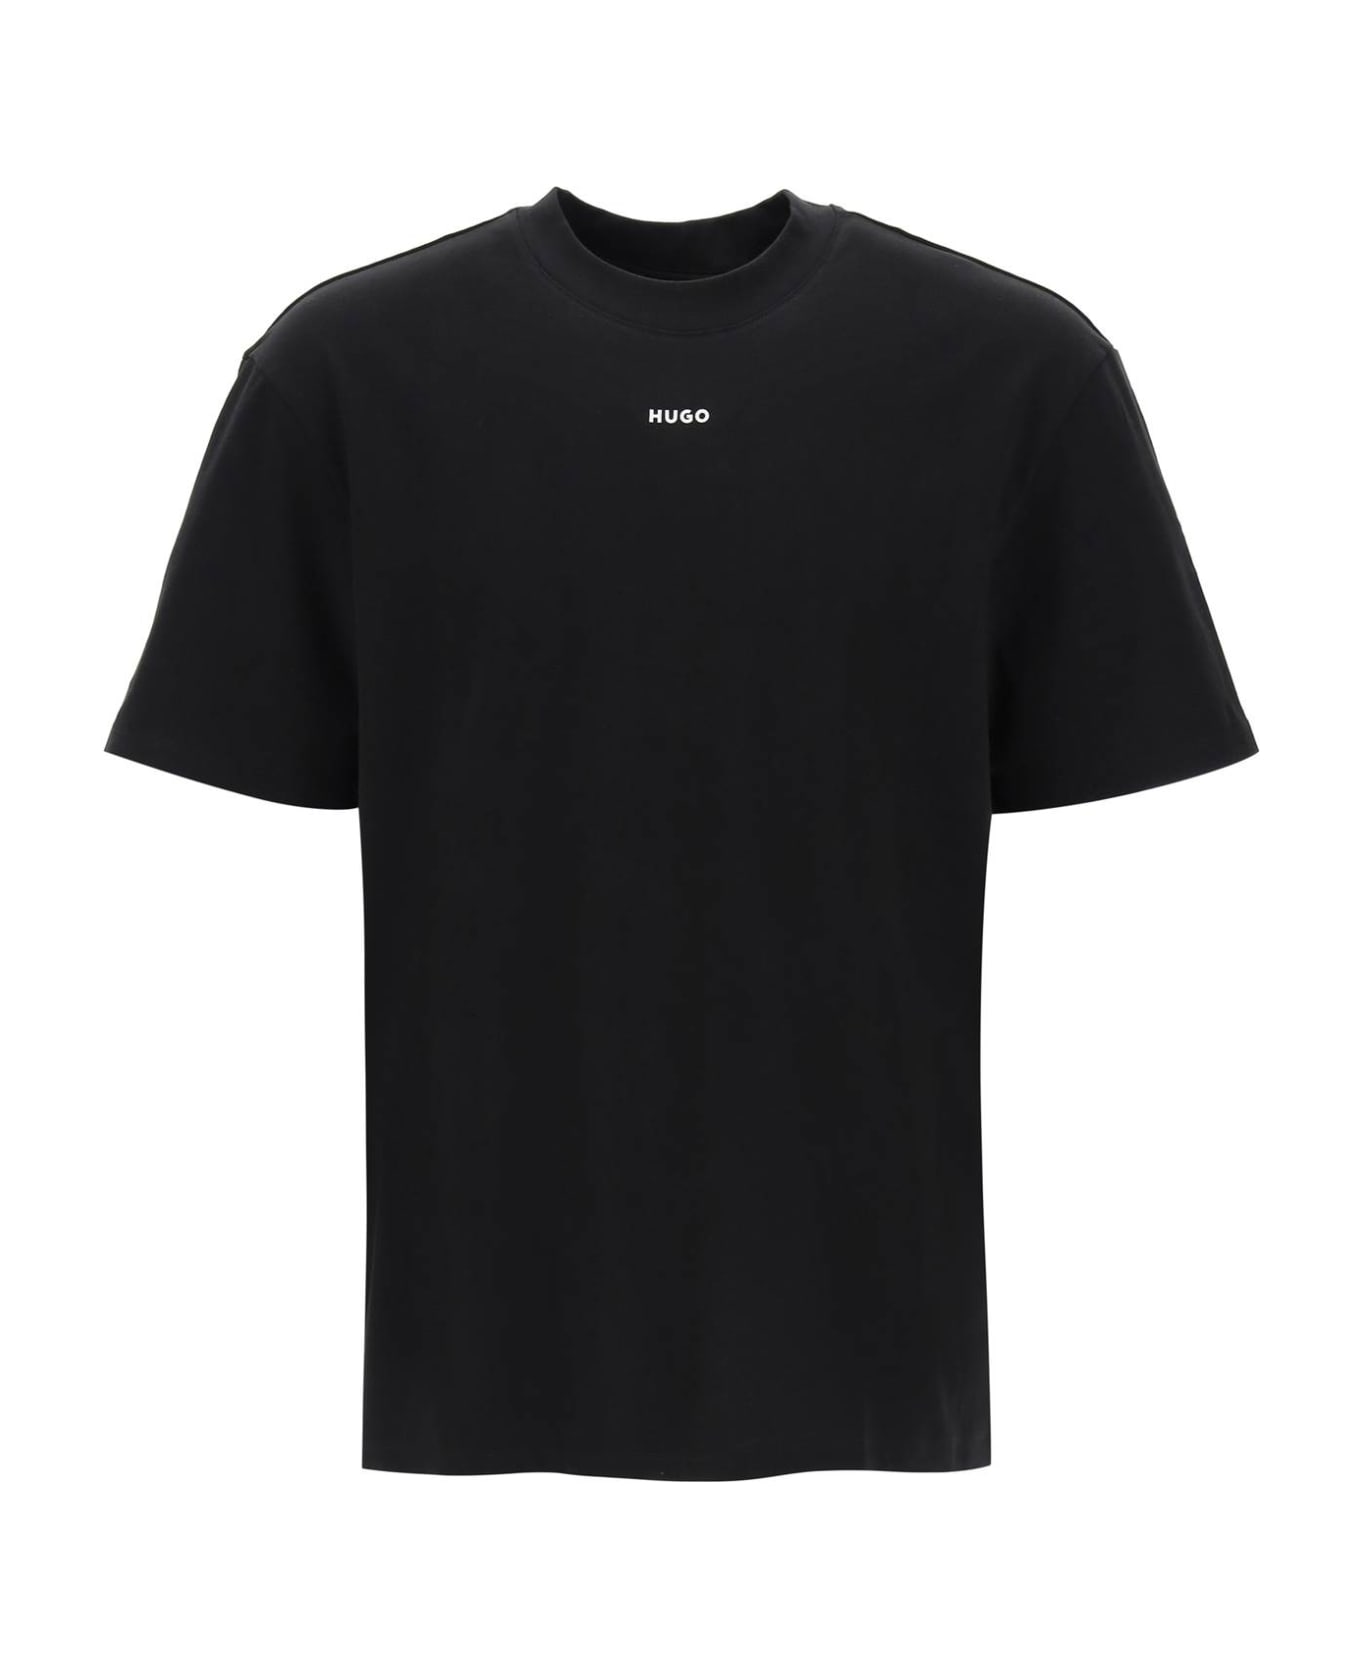 Hugo Boss Dapolino Crew-neck T-shirt - Black